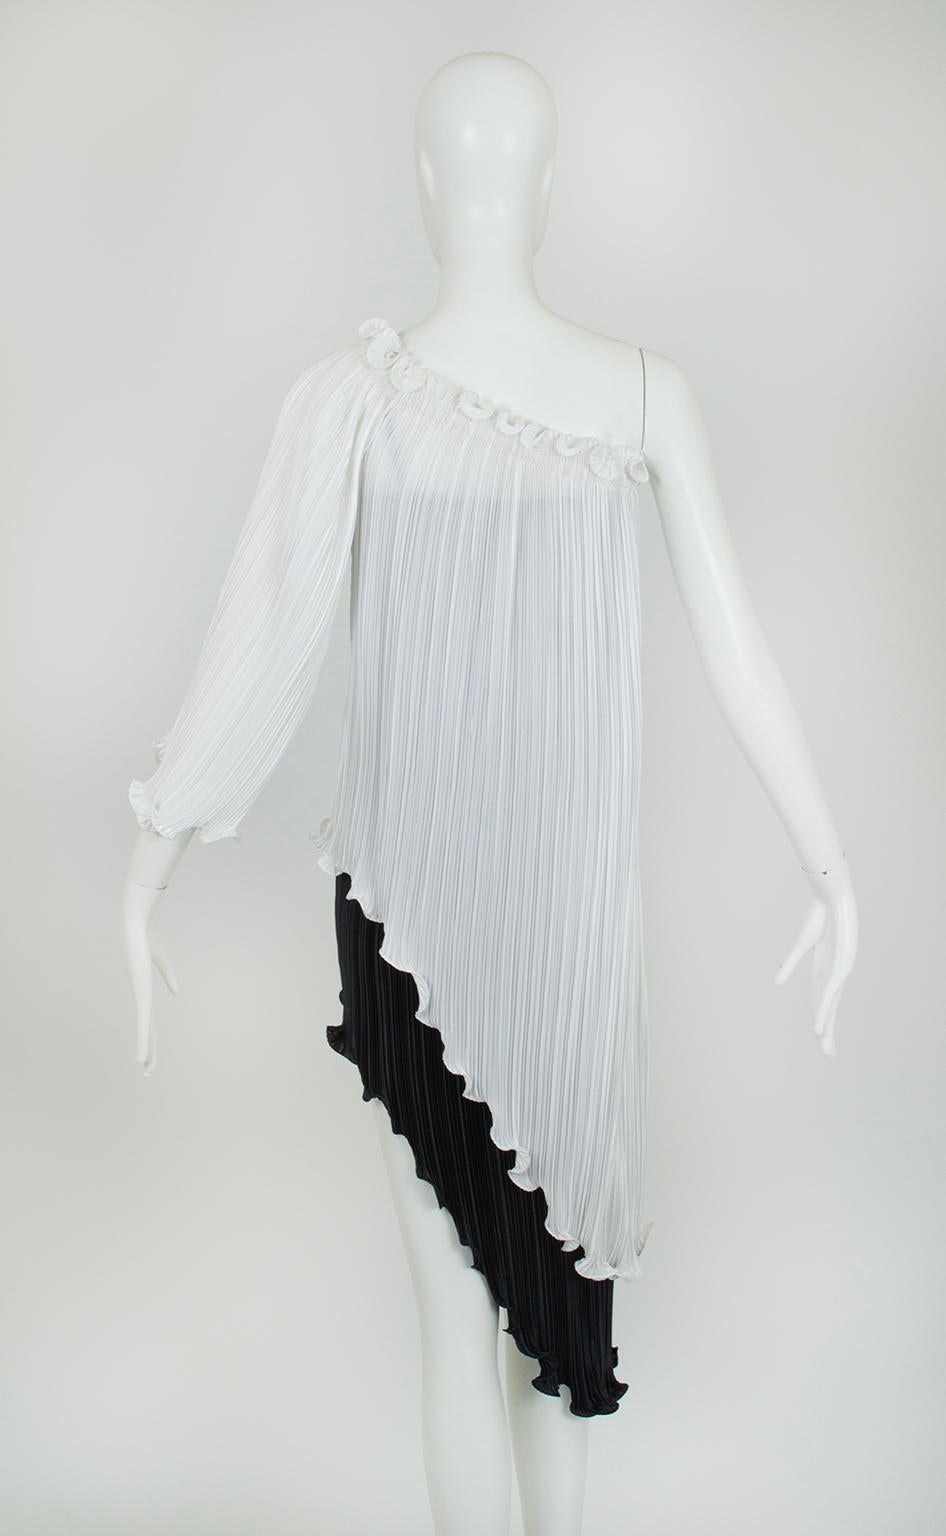 New Tarquin Ebker Black White Asymmetrical Delphos Dress w Provenance – S, 1978 For Sale 1